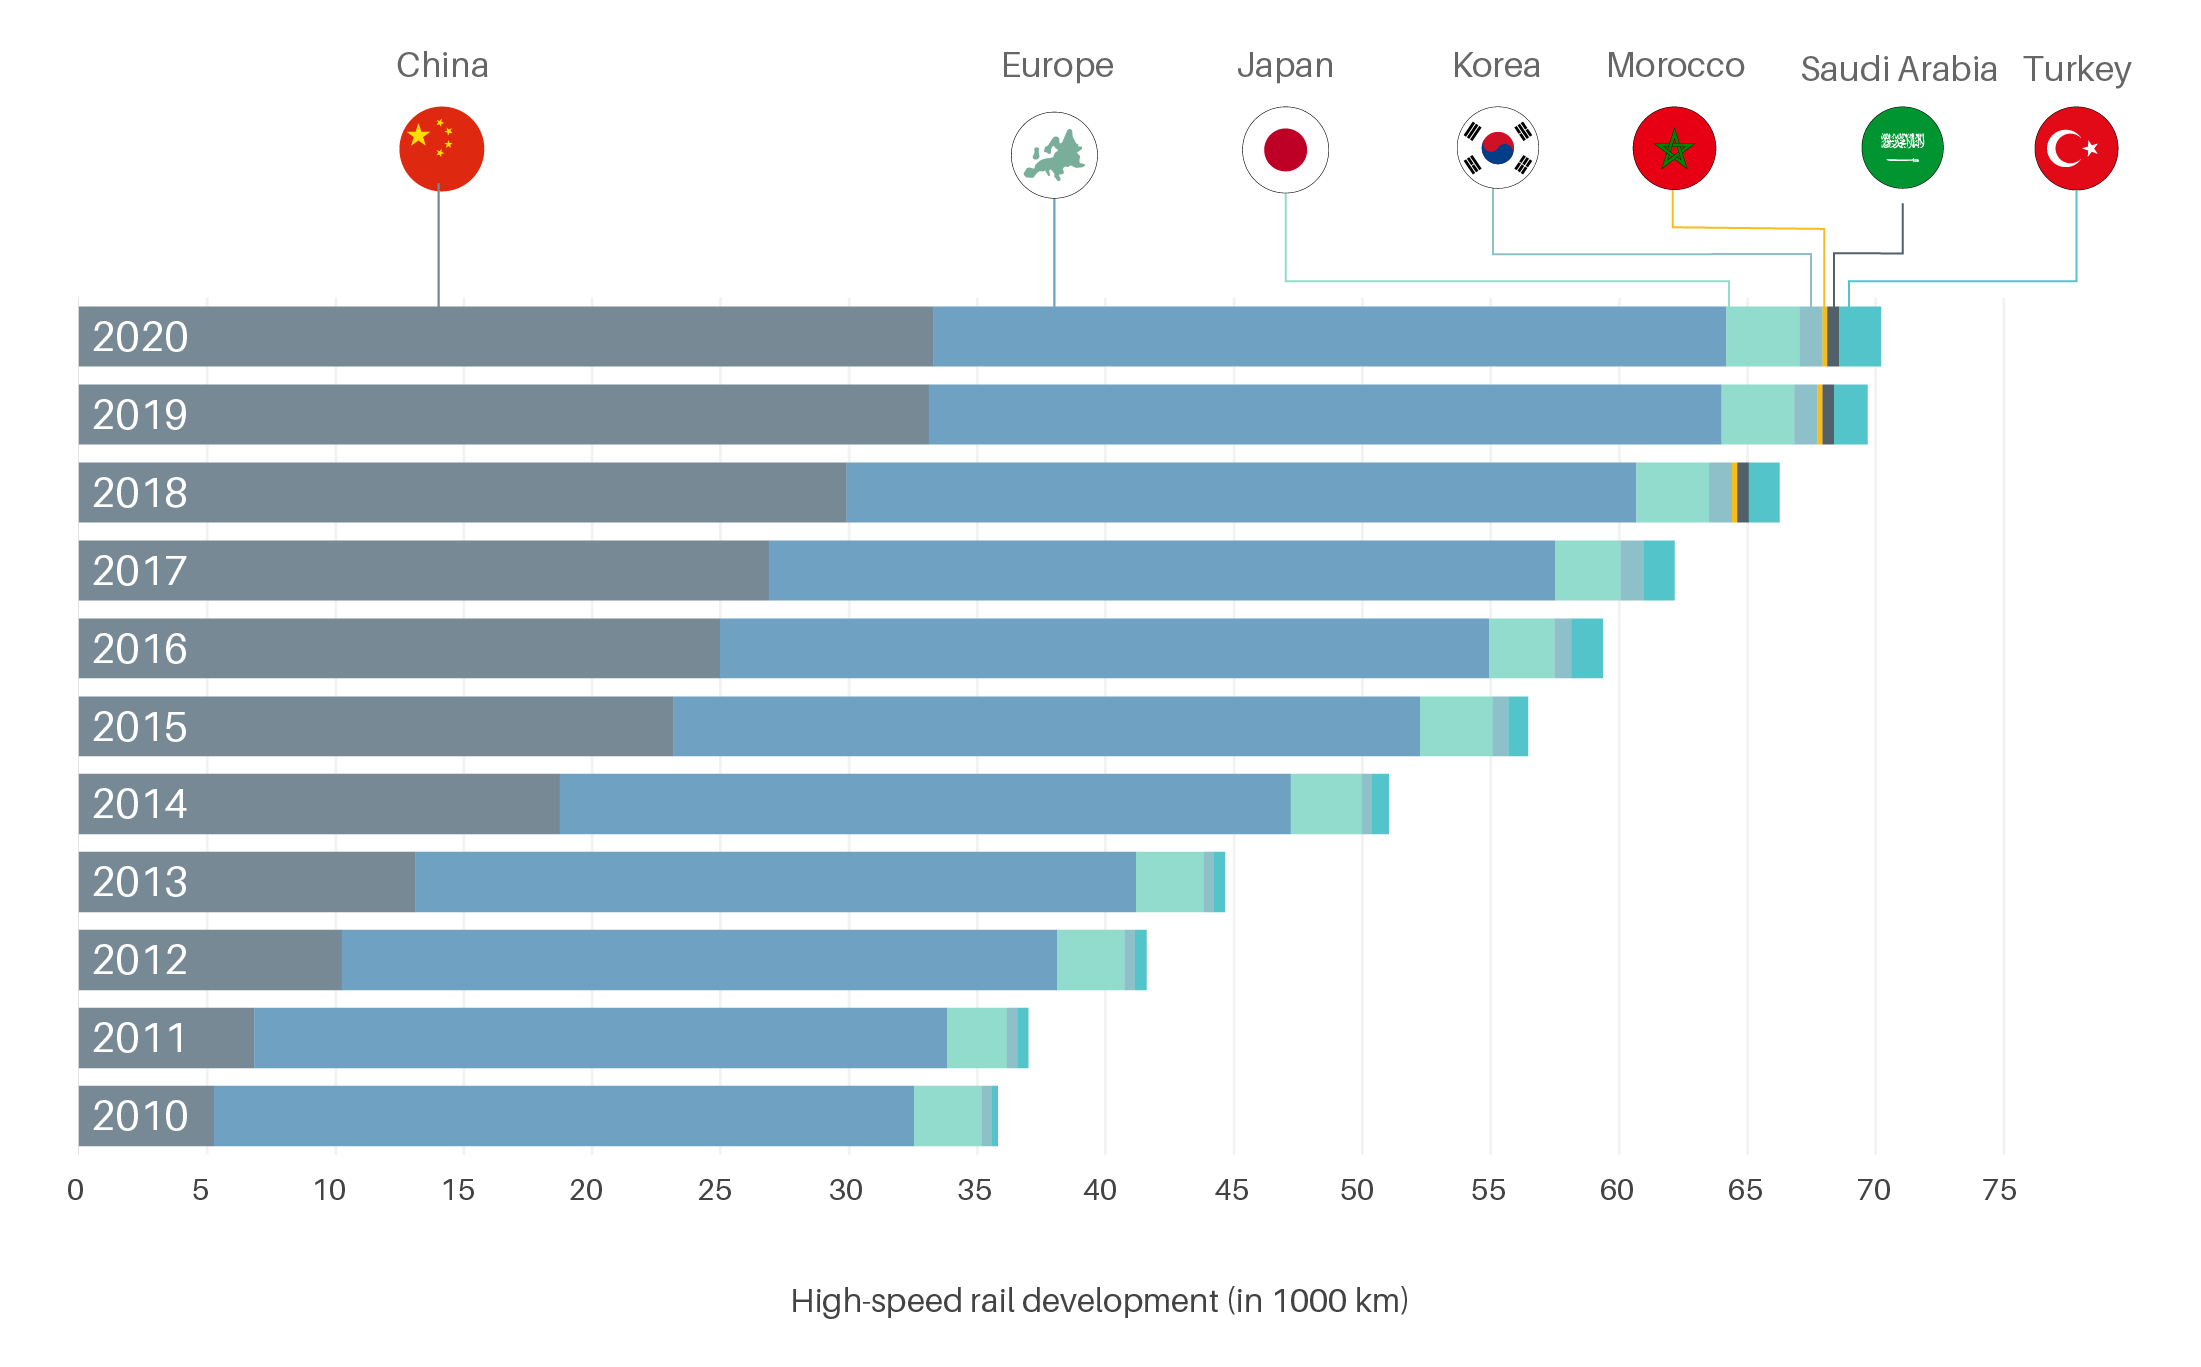 High-speed rail development by region, 2010-2020